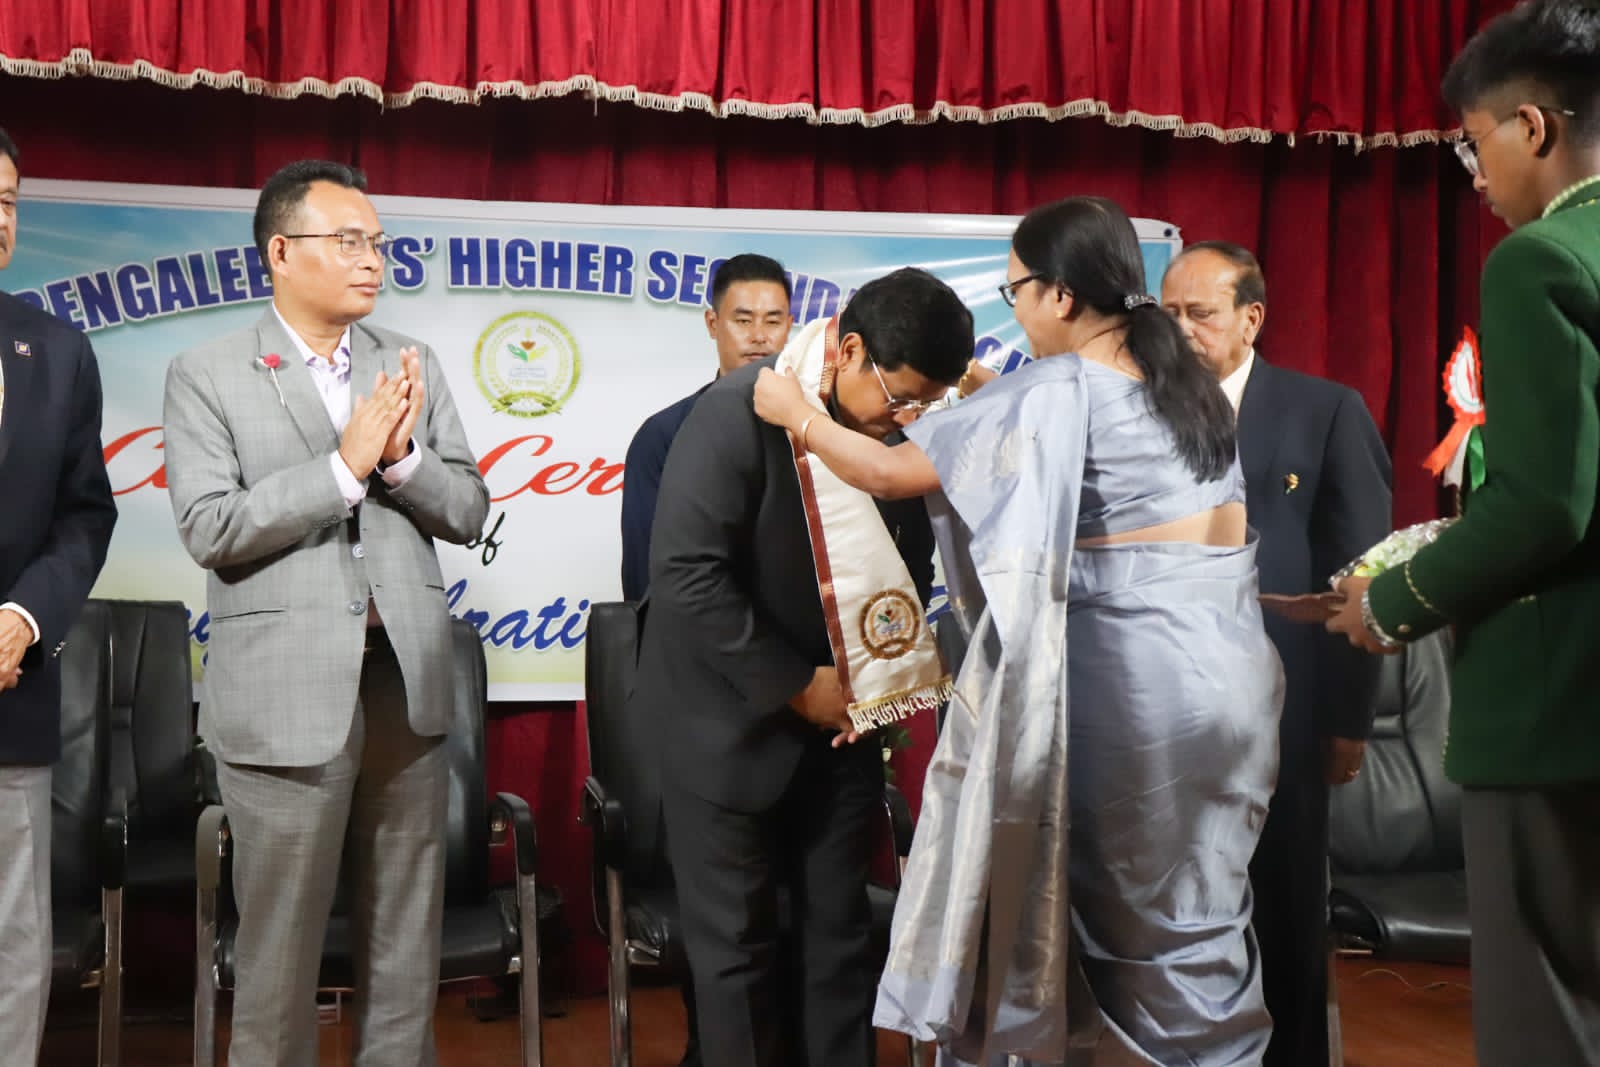 Meghalaya CM attends Laban Bengali Higher Secondary School Centennial Jubilee